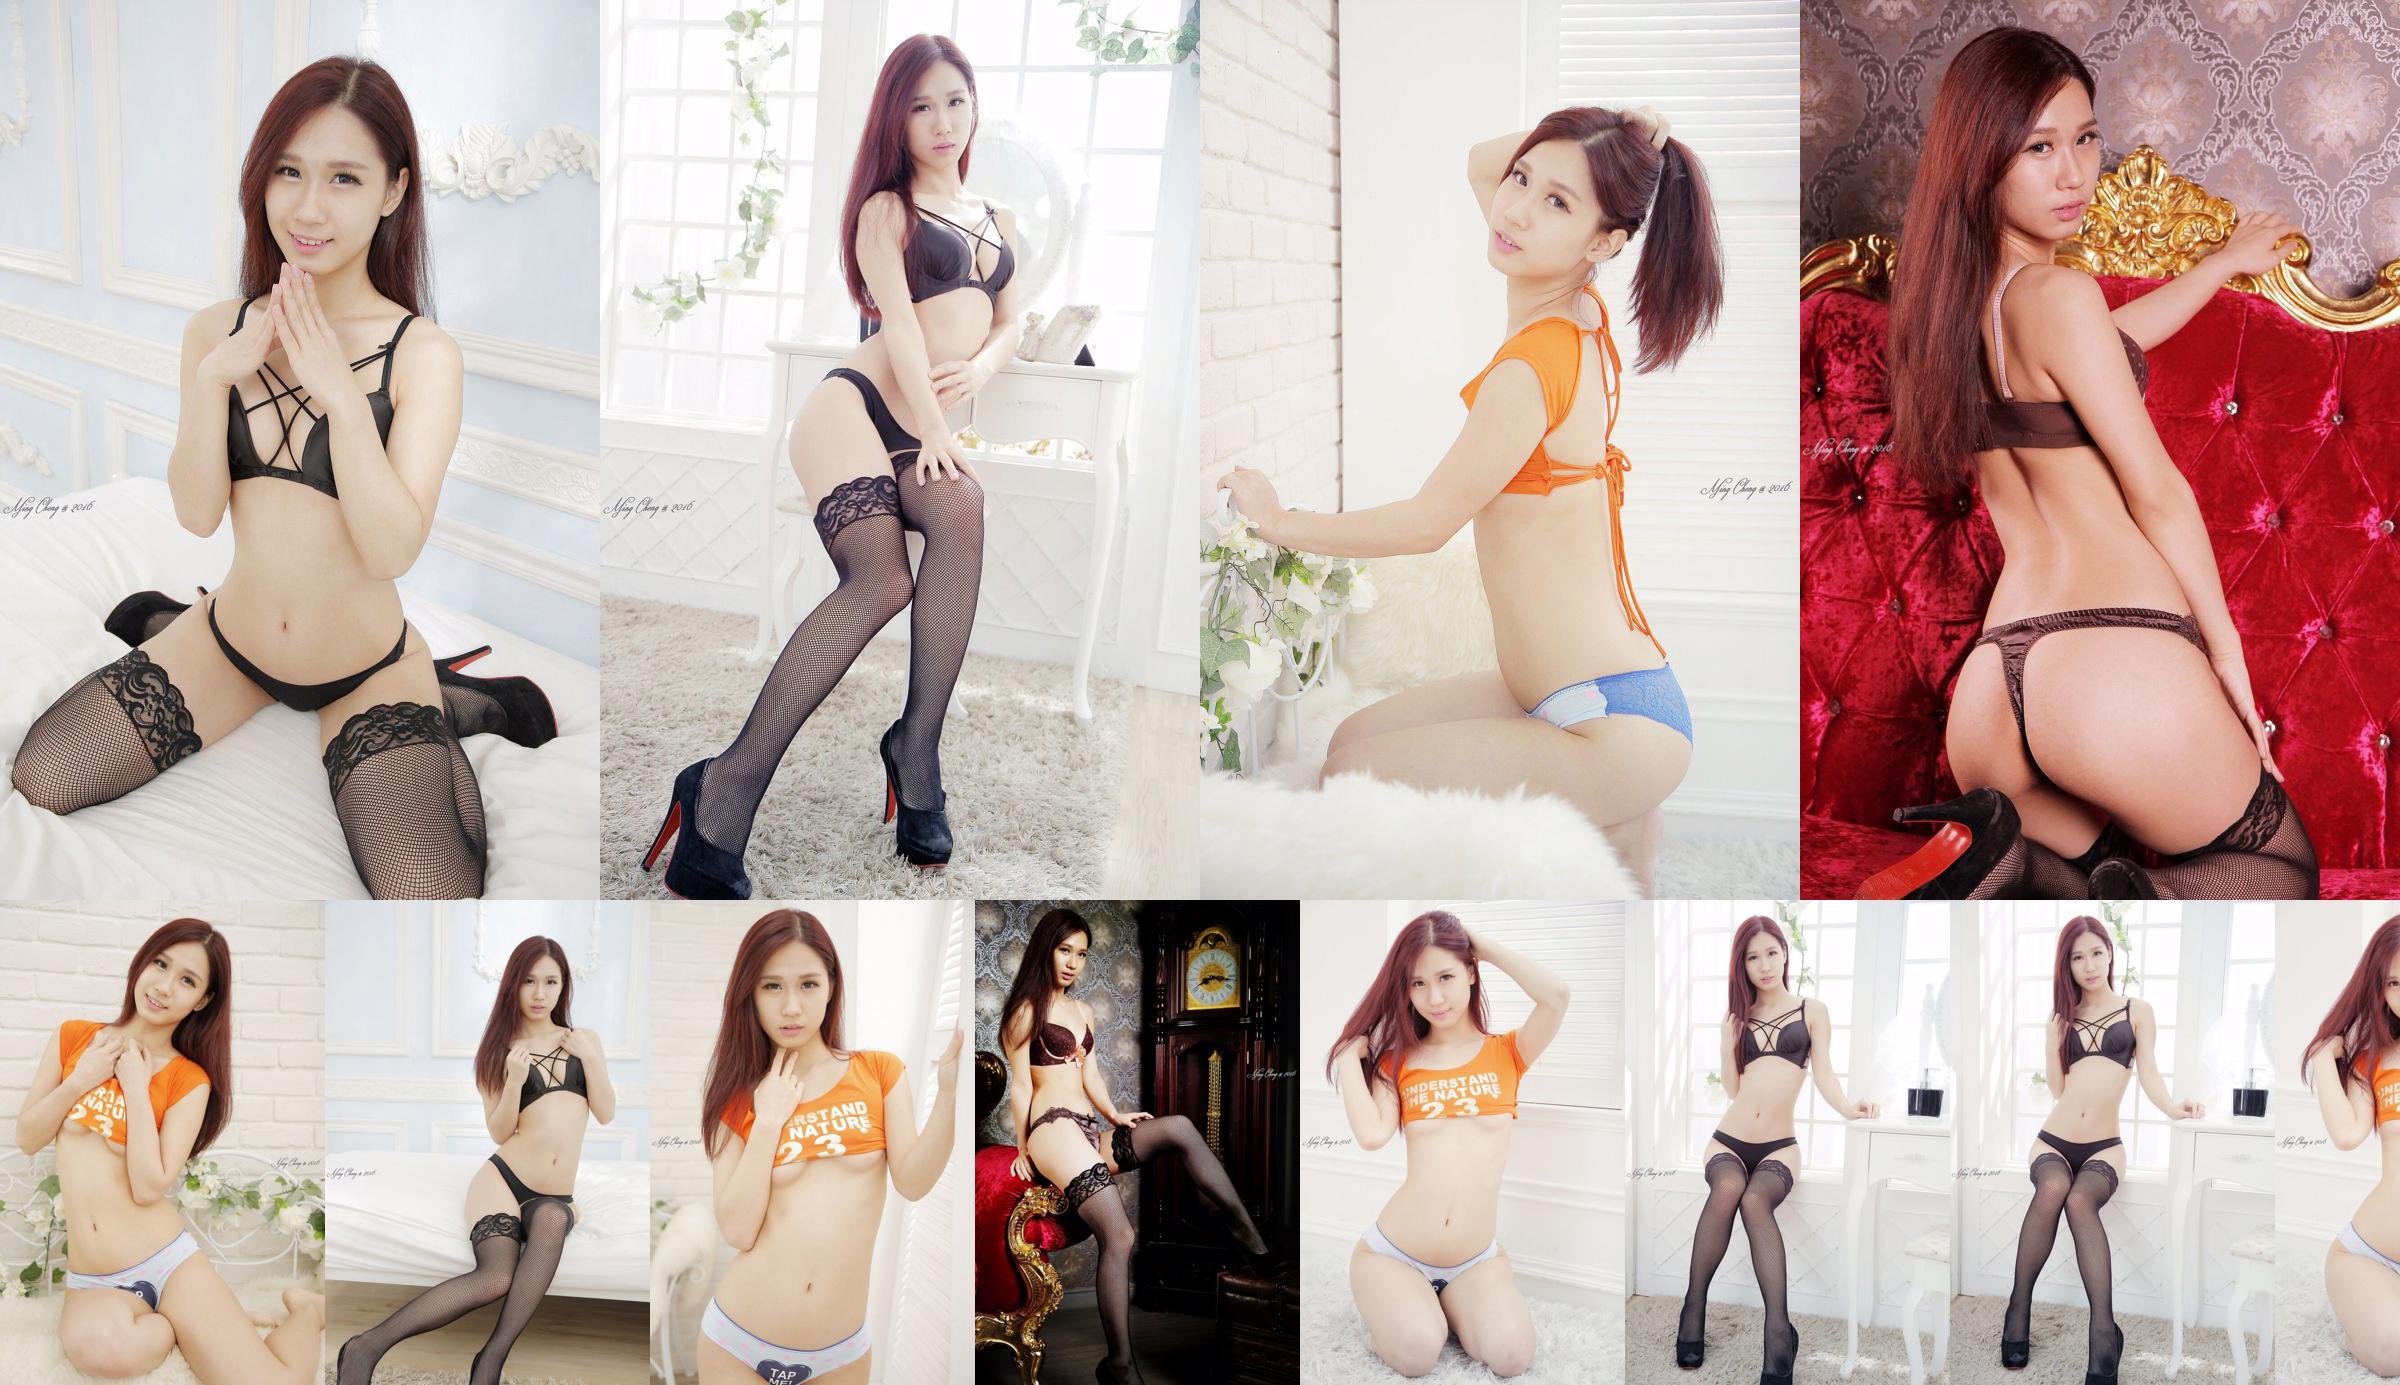 [Taiwan Zhengmei] Belle underwear studio shooting No.7e2bc5 Page 3